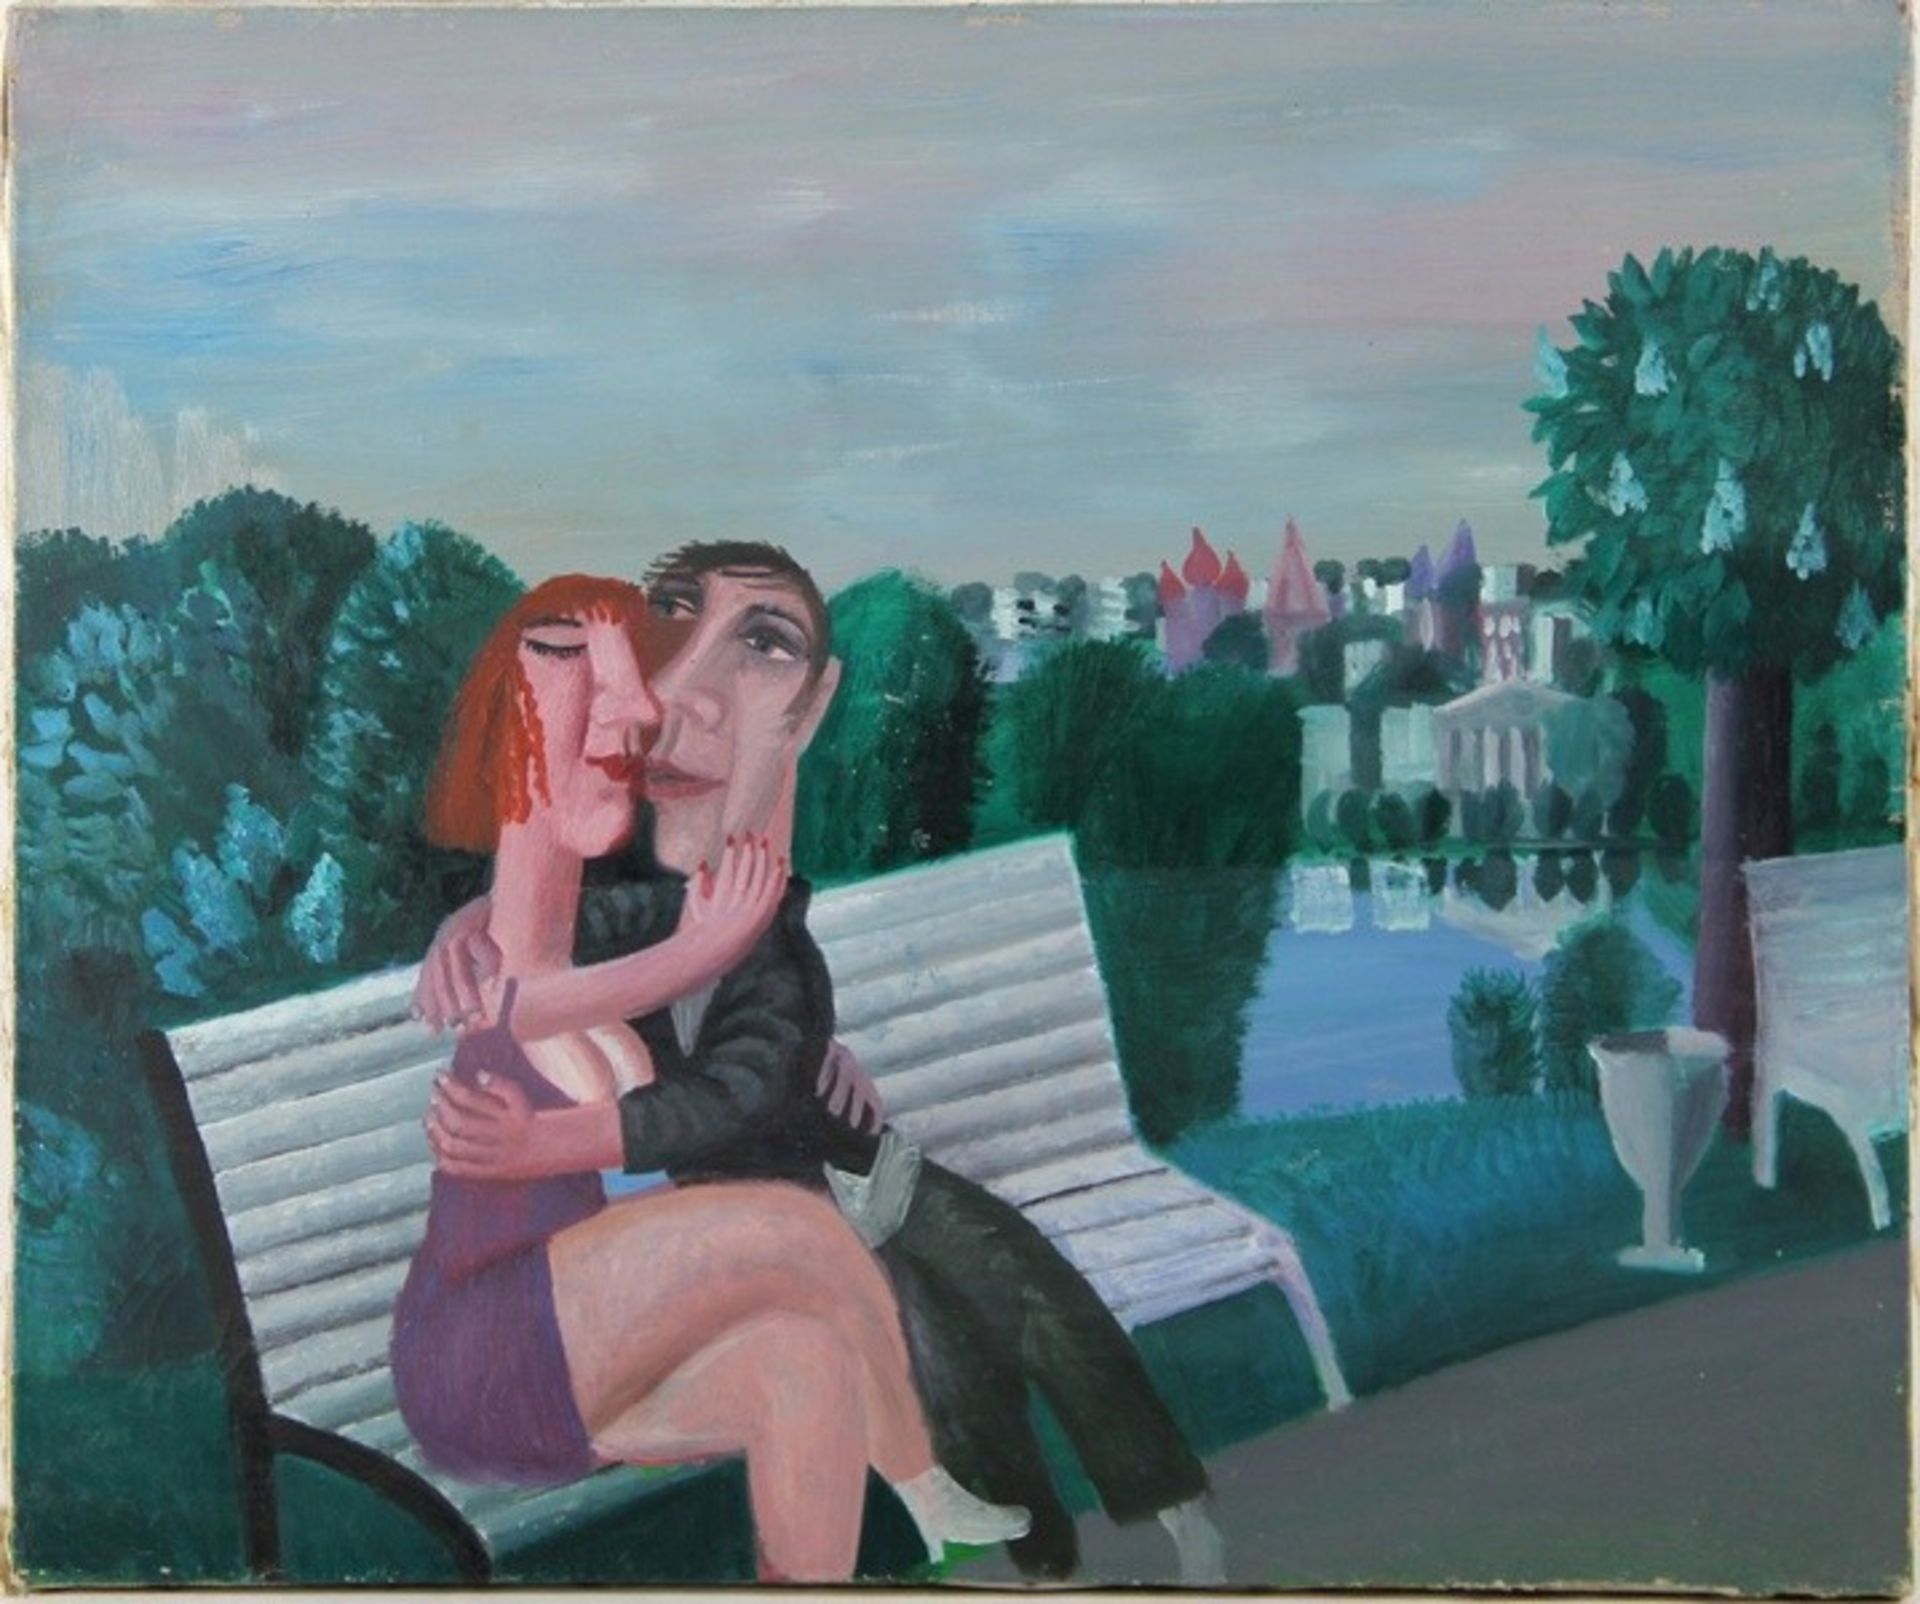 Goryainov, Anatoly1992, sich umarmendes Paar auf einer Bank im Park, rechts Blick auf eine Stadt,